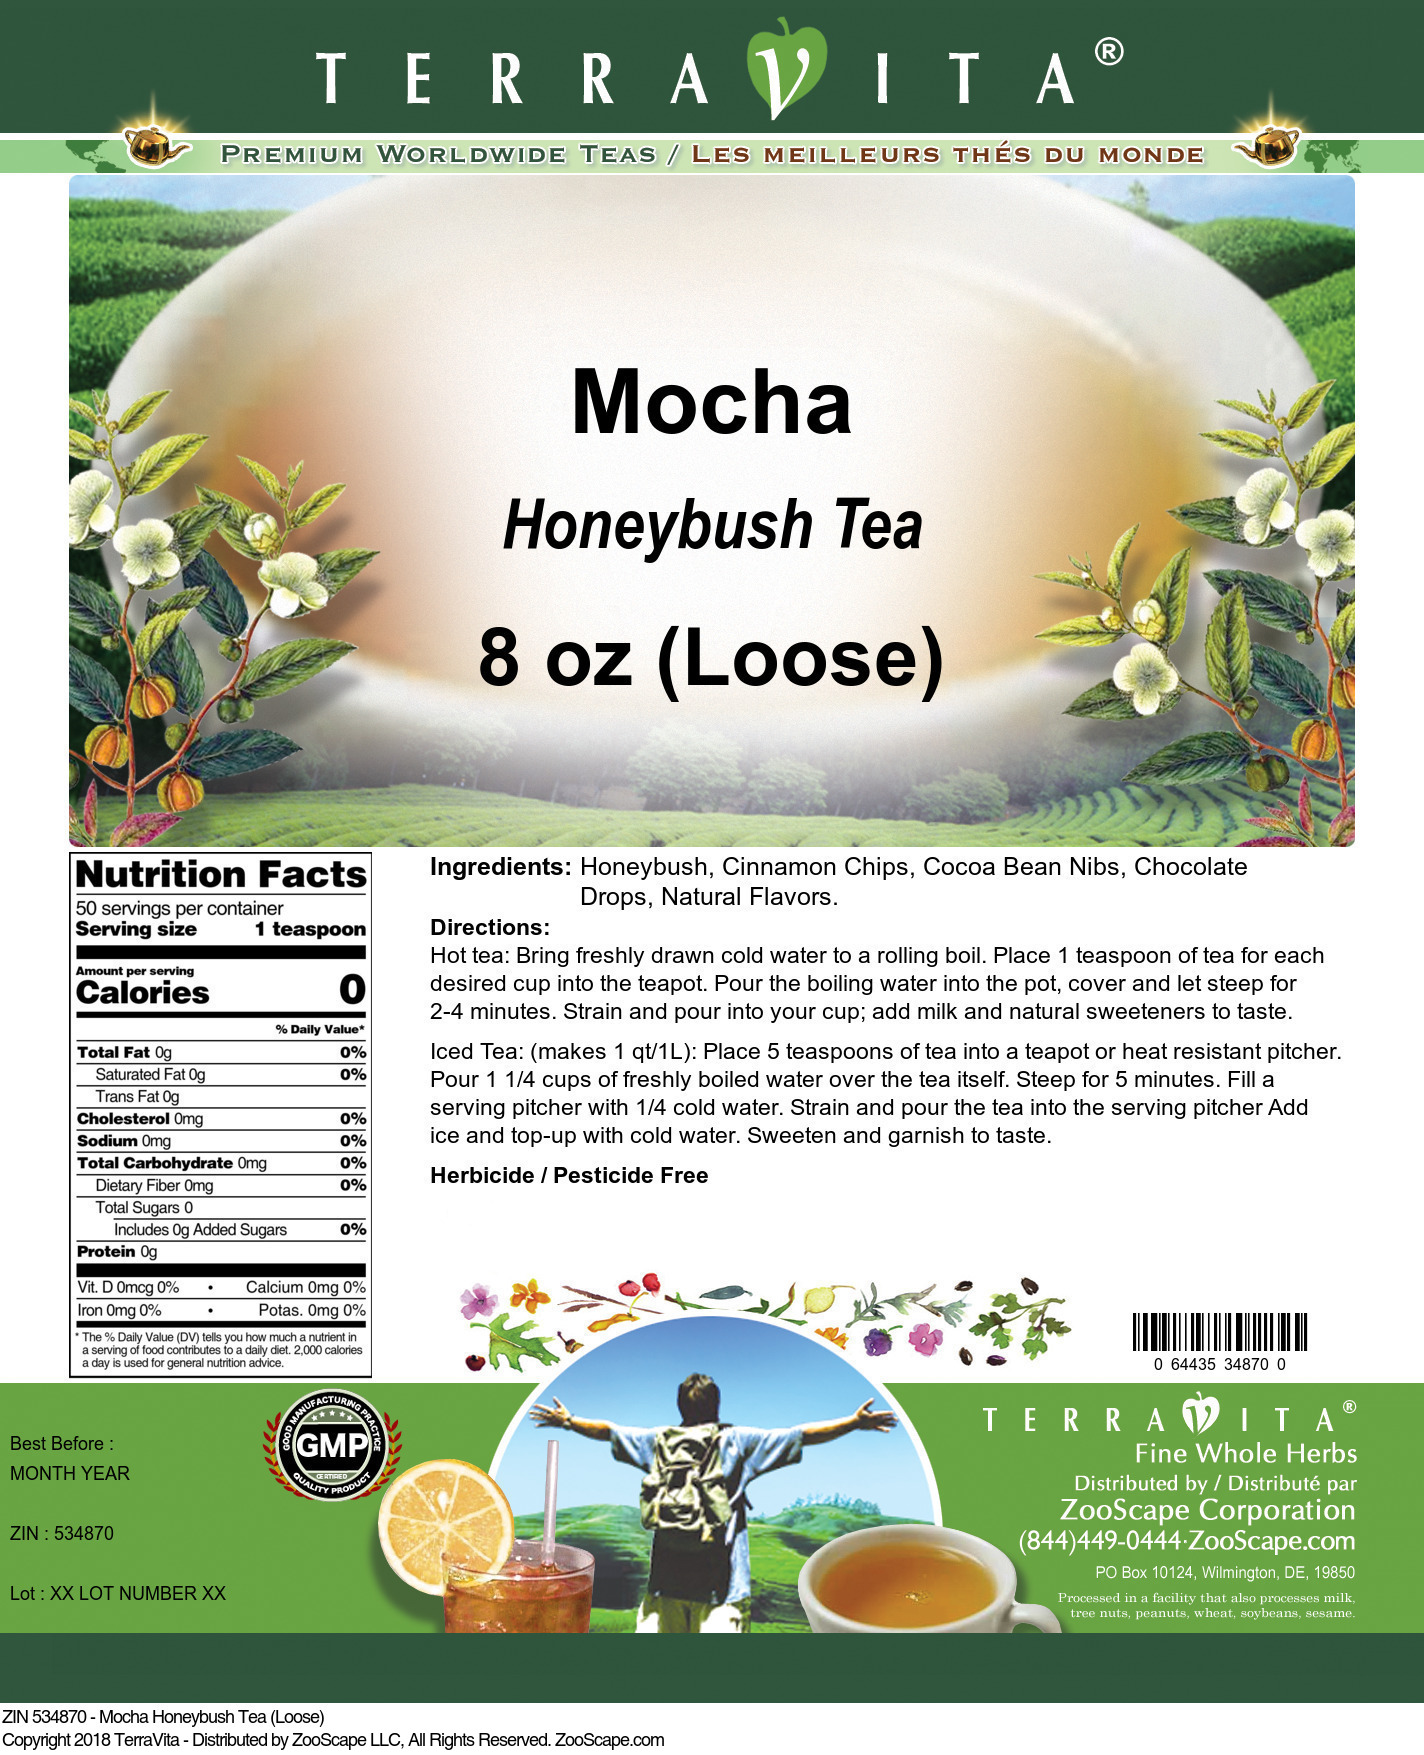 Mocha Honeybush Tea (Loose) - Label